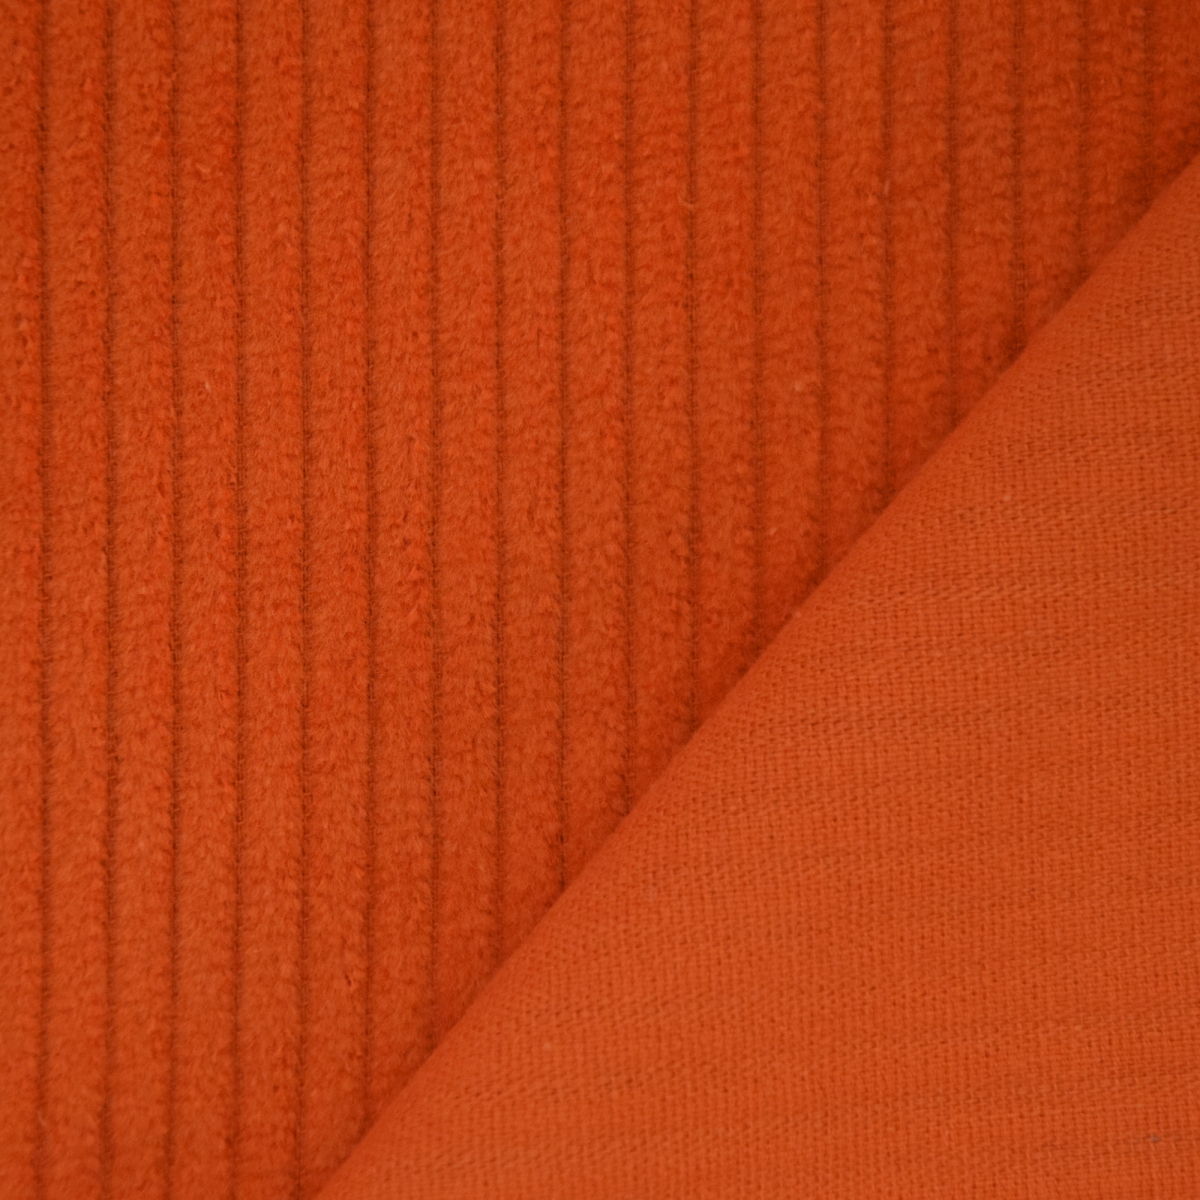 Slordig Eigenlijk Inspectie Corduroy oranje | Stoffen Hemmers